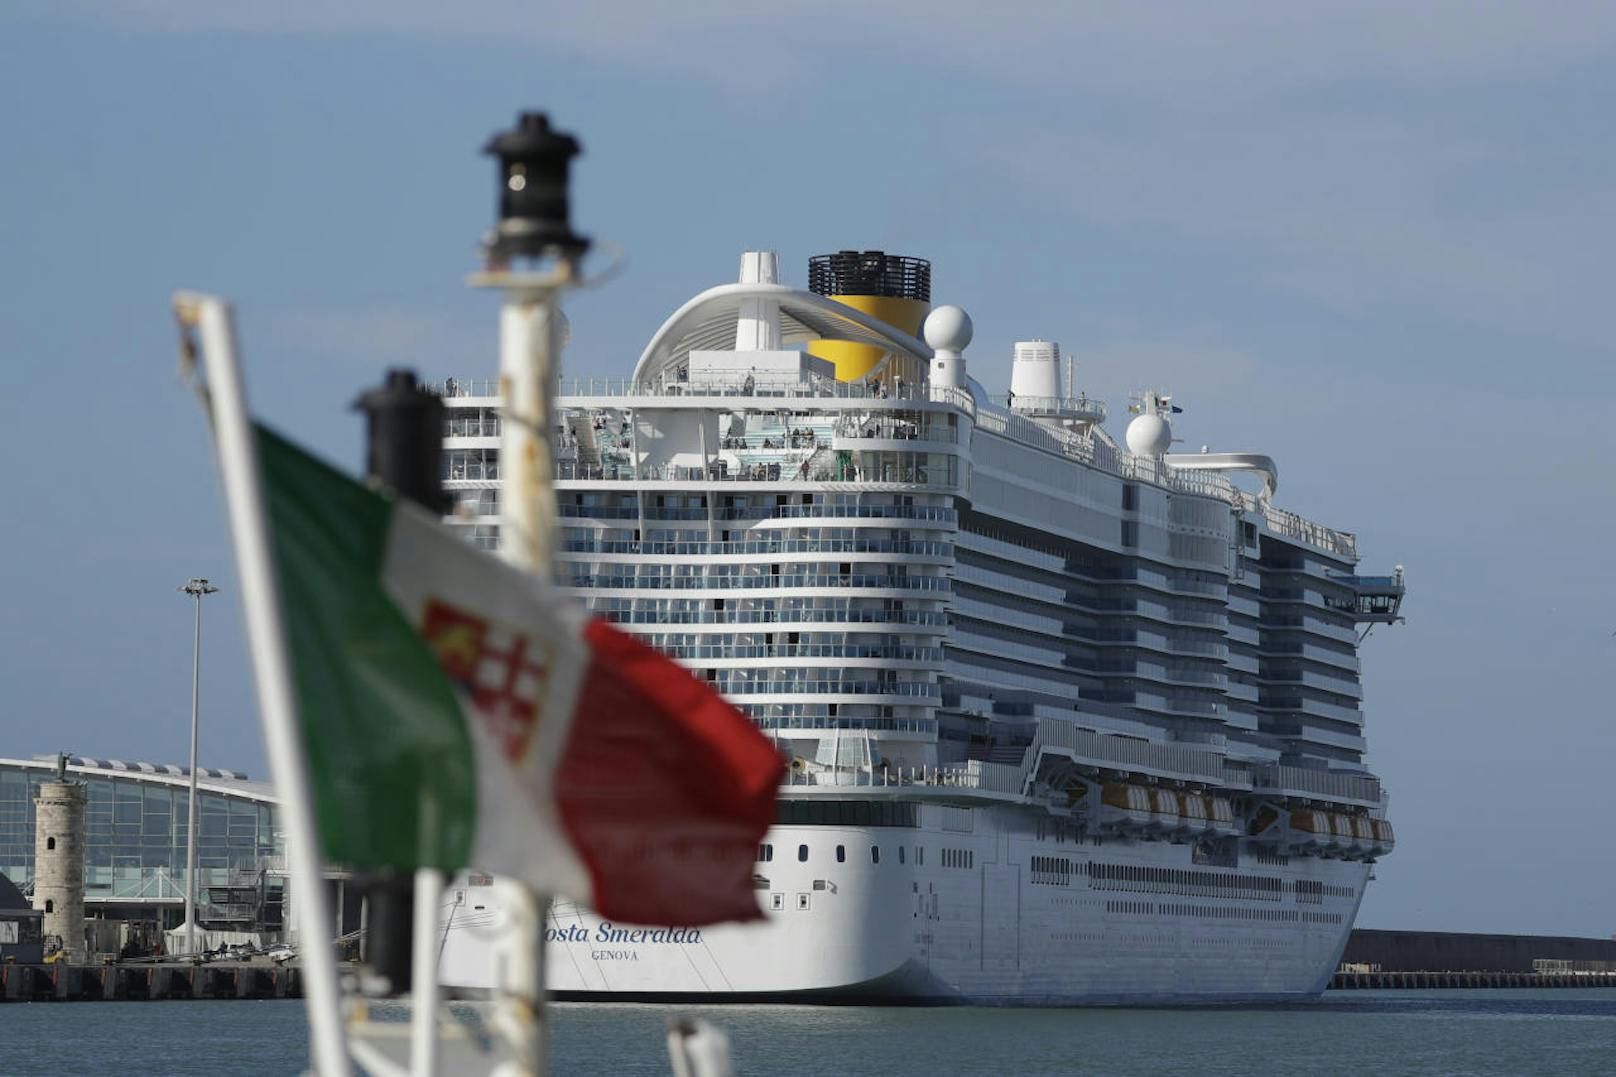 Auf dem Kreuzfahrtsschiff "Costa Smeralda" sind in Italien zwei Verdächtsfälle von Coronavirus-Erkrankungen aufgetreten. Laut italienischen Medien werden zwei Personen auf eine mögliche Ansteckung mit dem Coronavirus getestet.